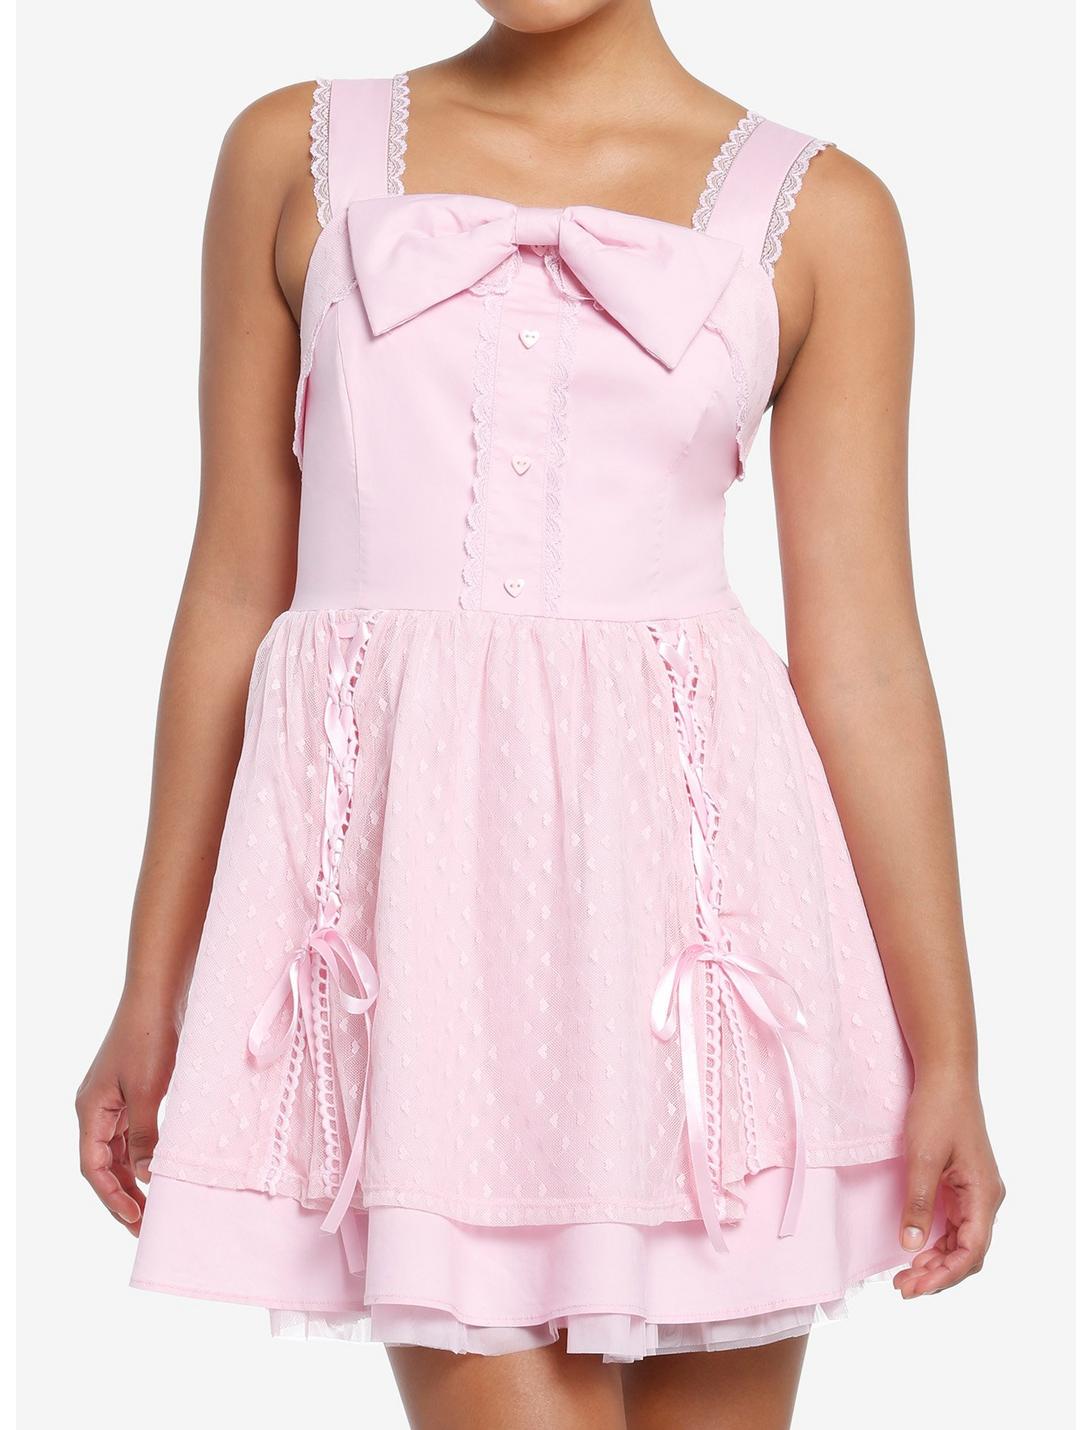 Sweet Society Pink Hearts Lace & Bows Dress, PINK, hi-res